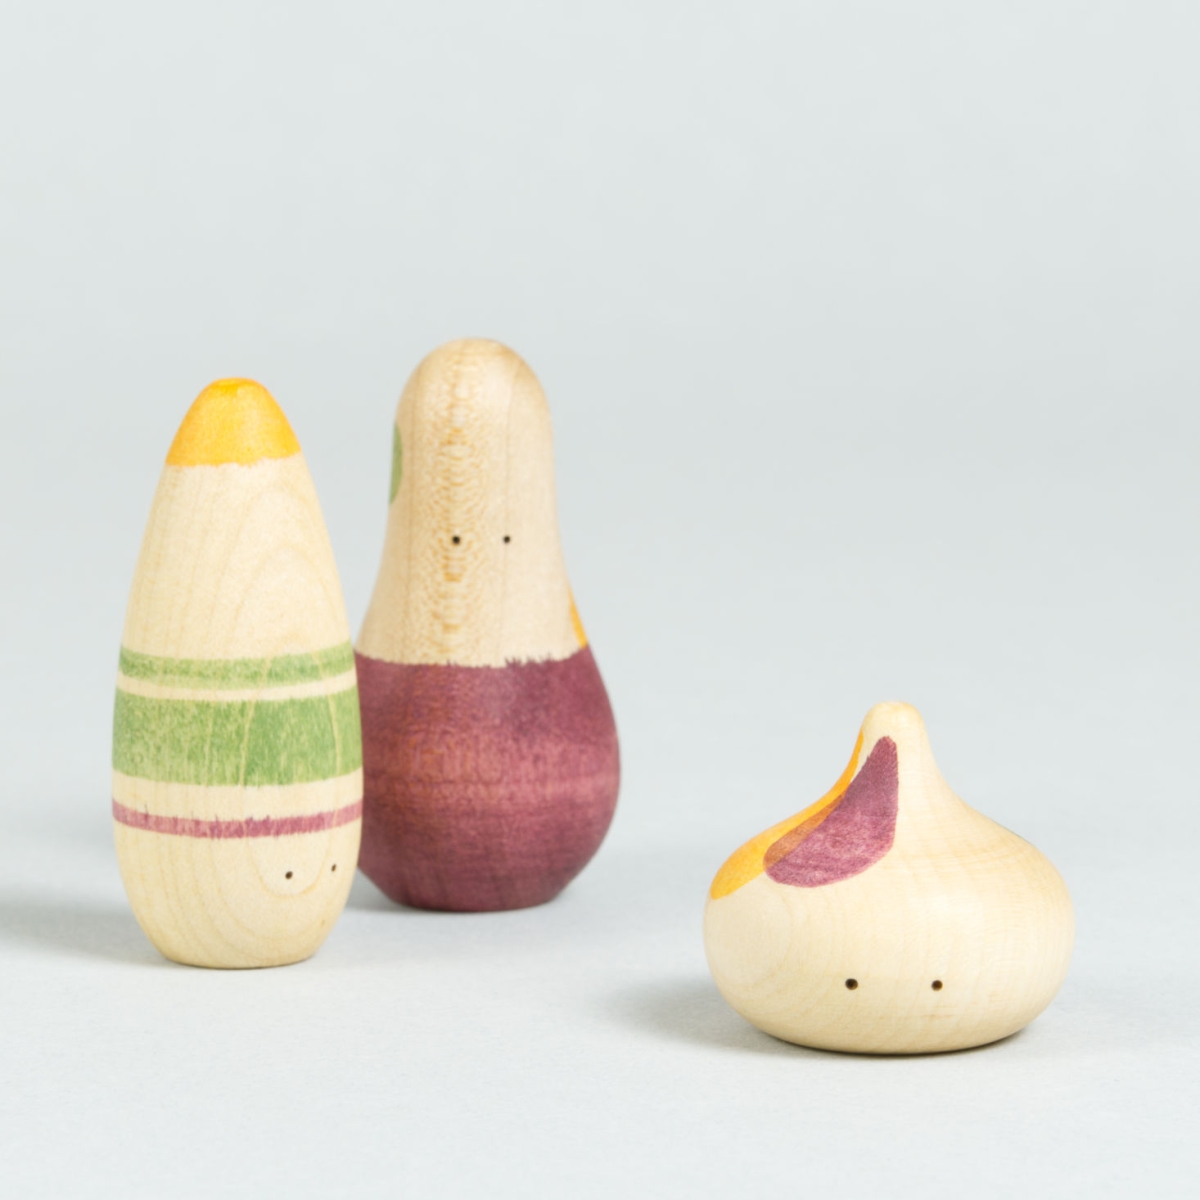 Drei organisch-geformte Holzfiguren mit Augen und weinrot, grün und orangenen Bemalungen.